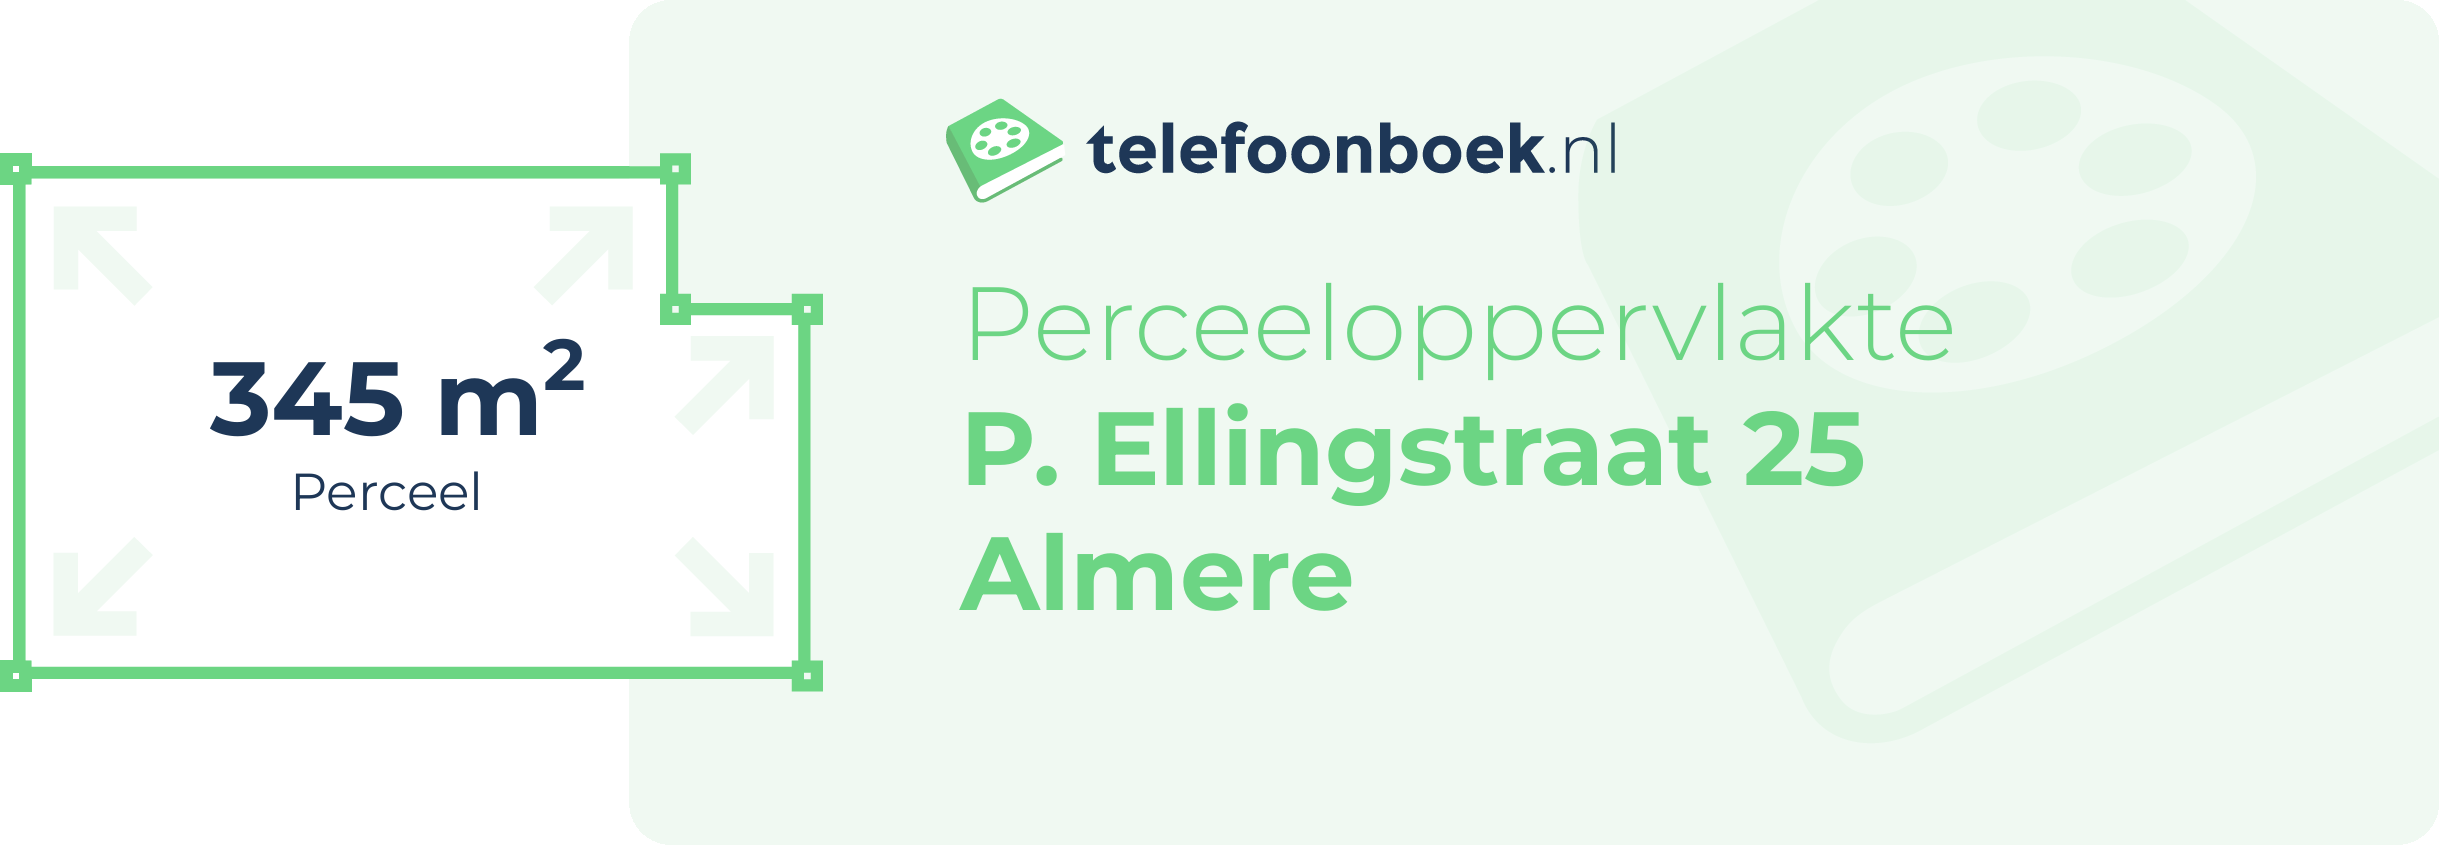 Perceeloppervlakte P. Ellingstraat 25 Almere